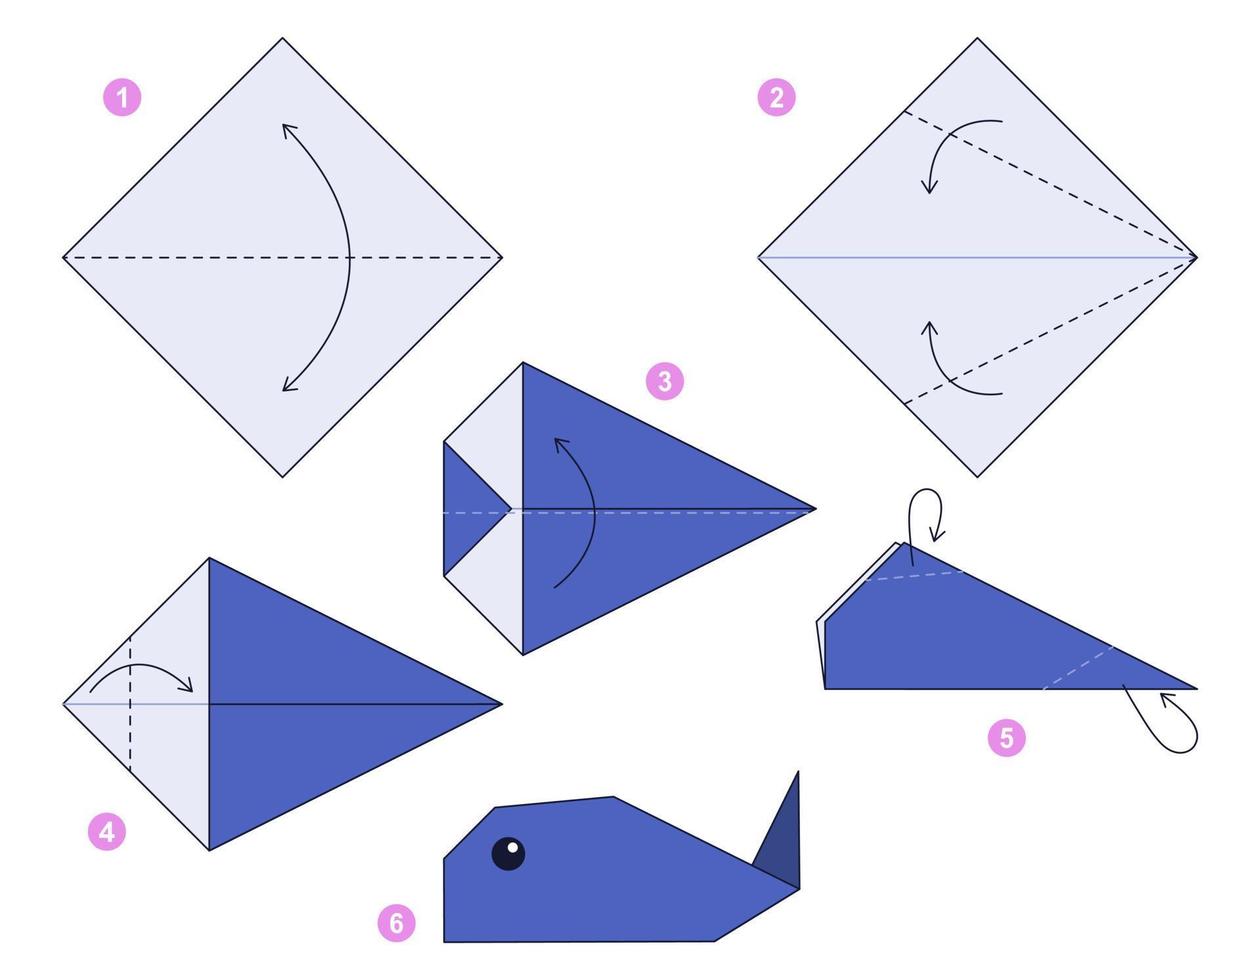 modèle mobile de didacticiel de schéma d'origami de baleine. origami pour les enfants. étape par étape comment faire une jolie baleine en origami. illustration vectorielle. vecteur